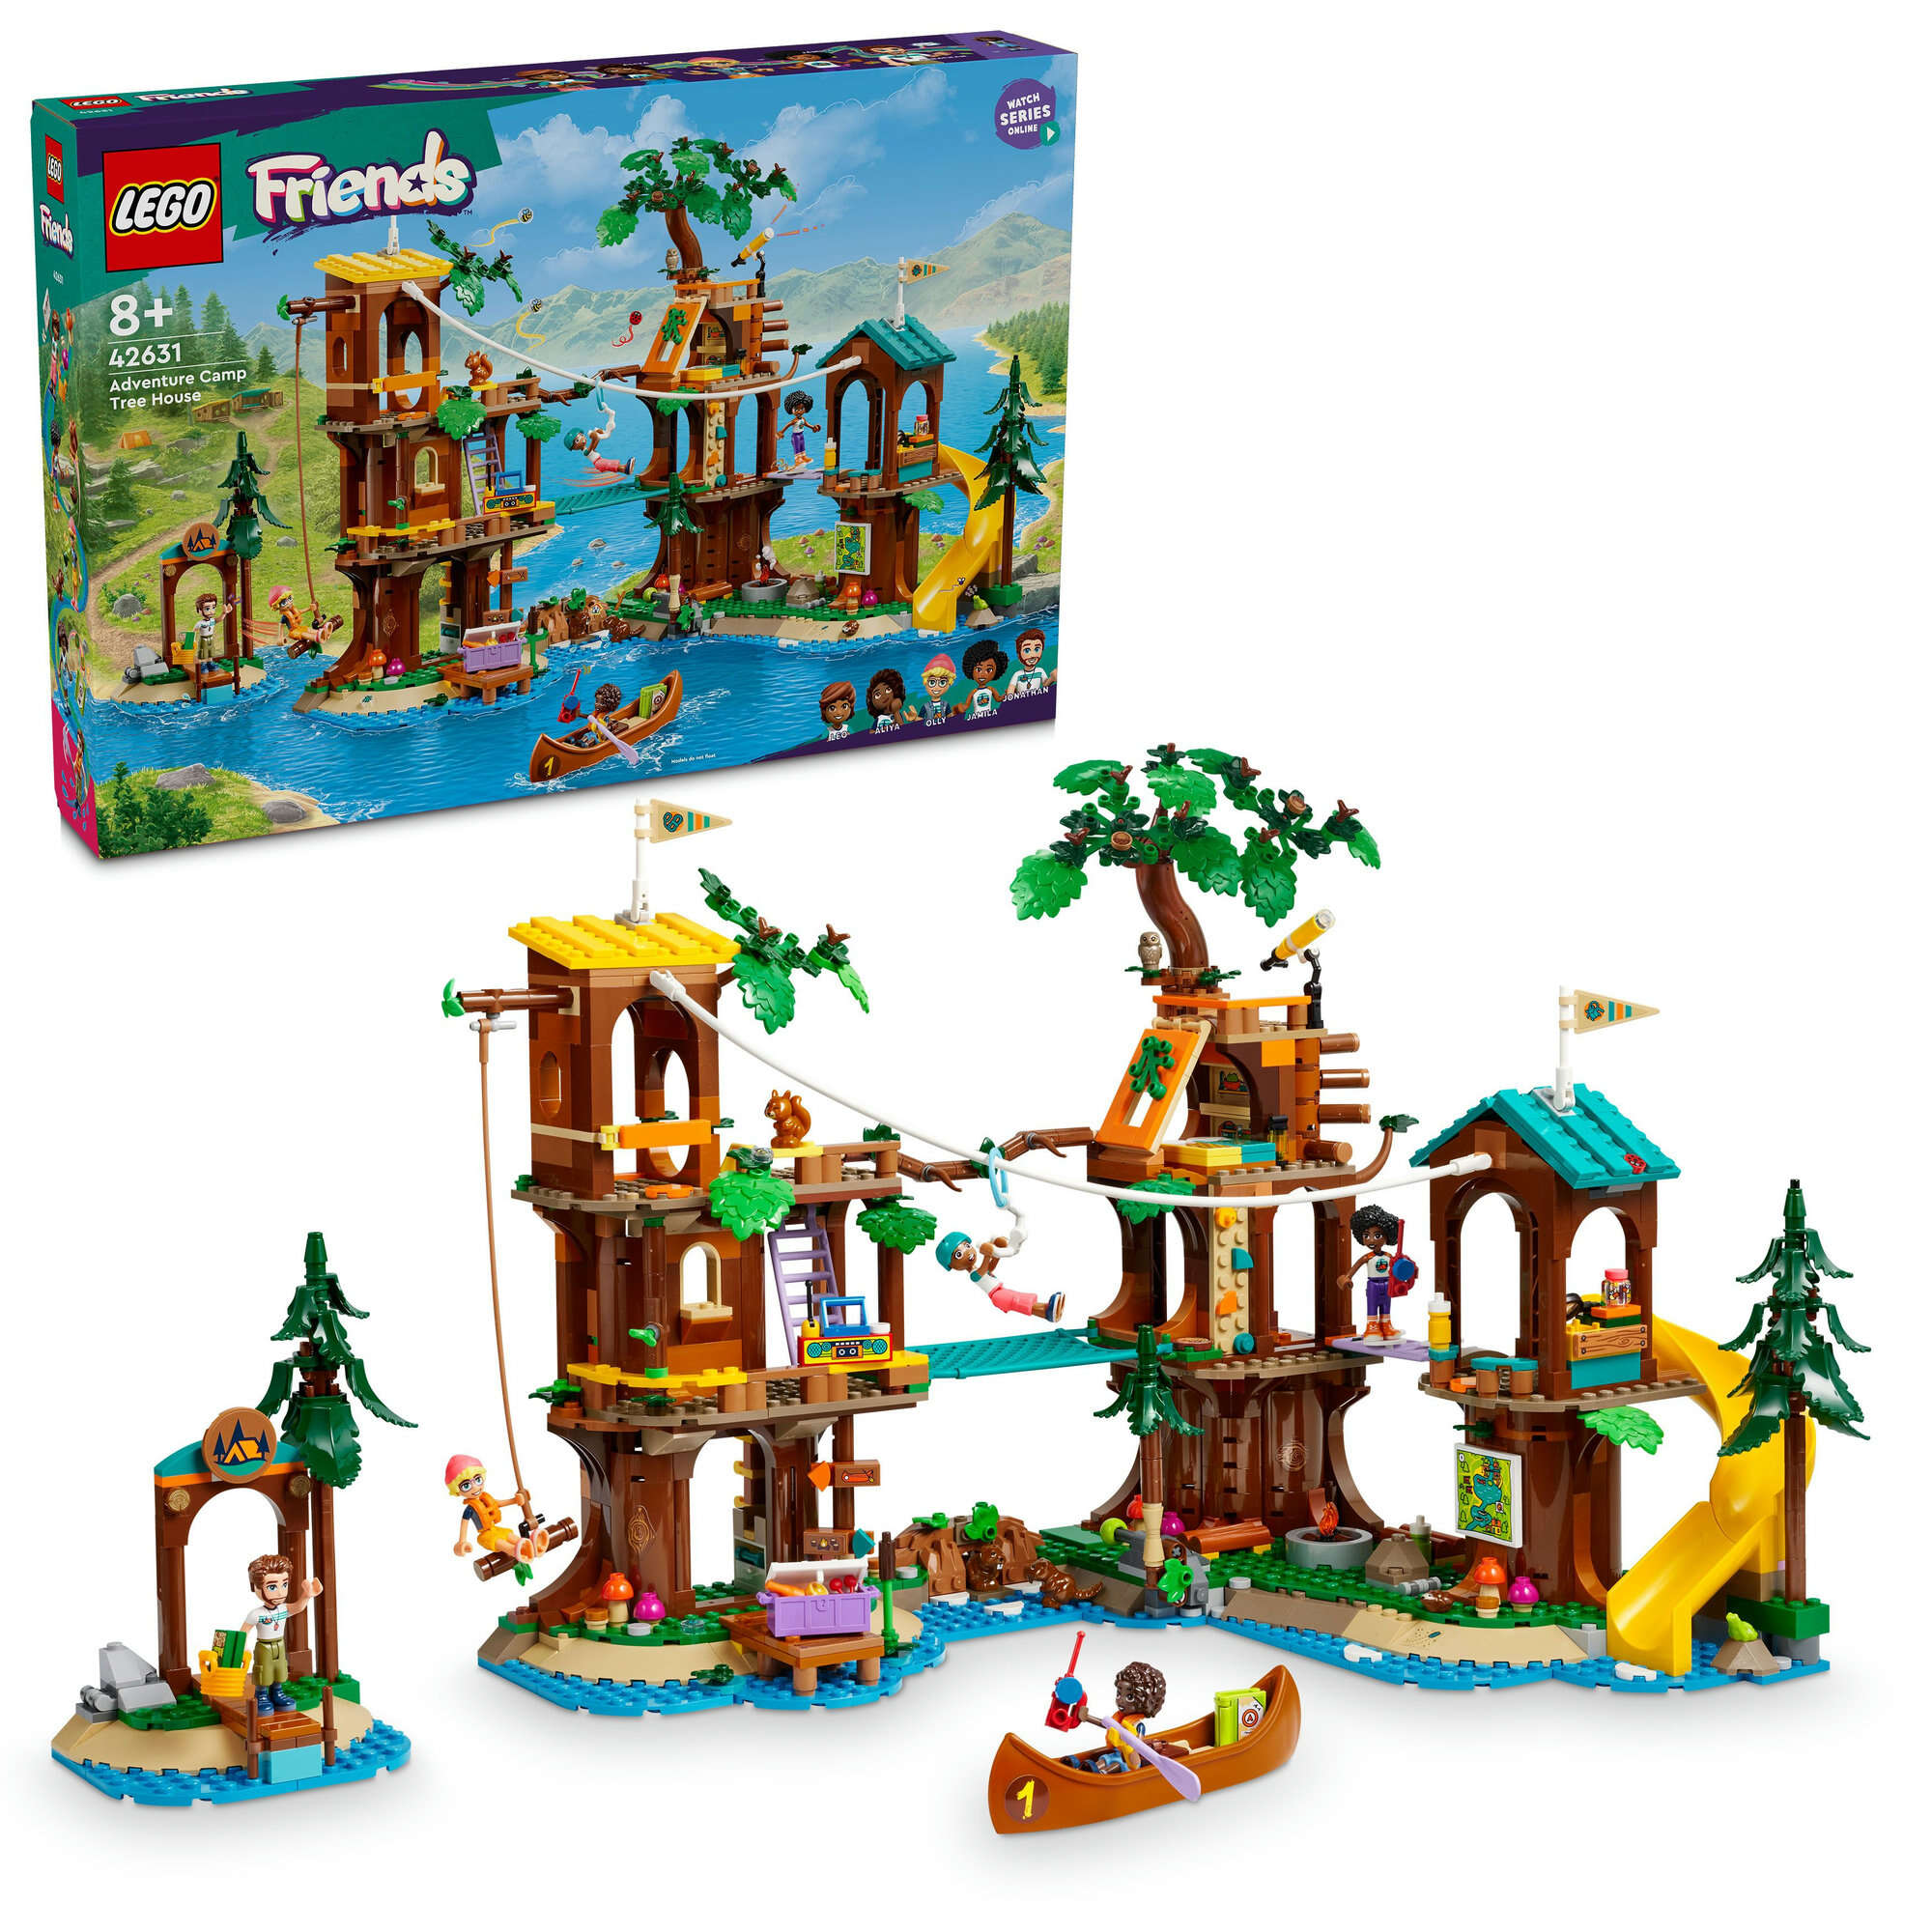 LEGO 42631 Friends Baumhaus im Abenteuercamp, 5 Spielfiguren, Zubehör und Tiere